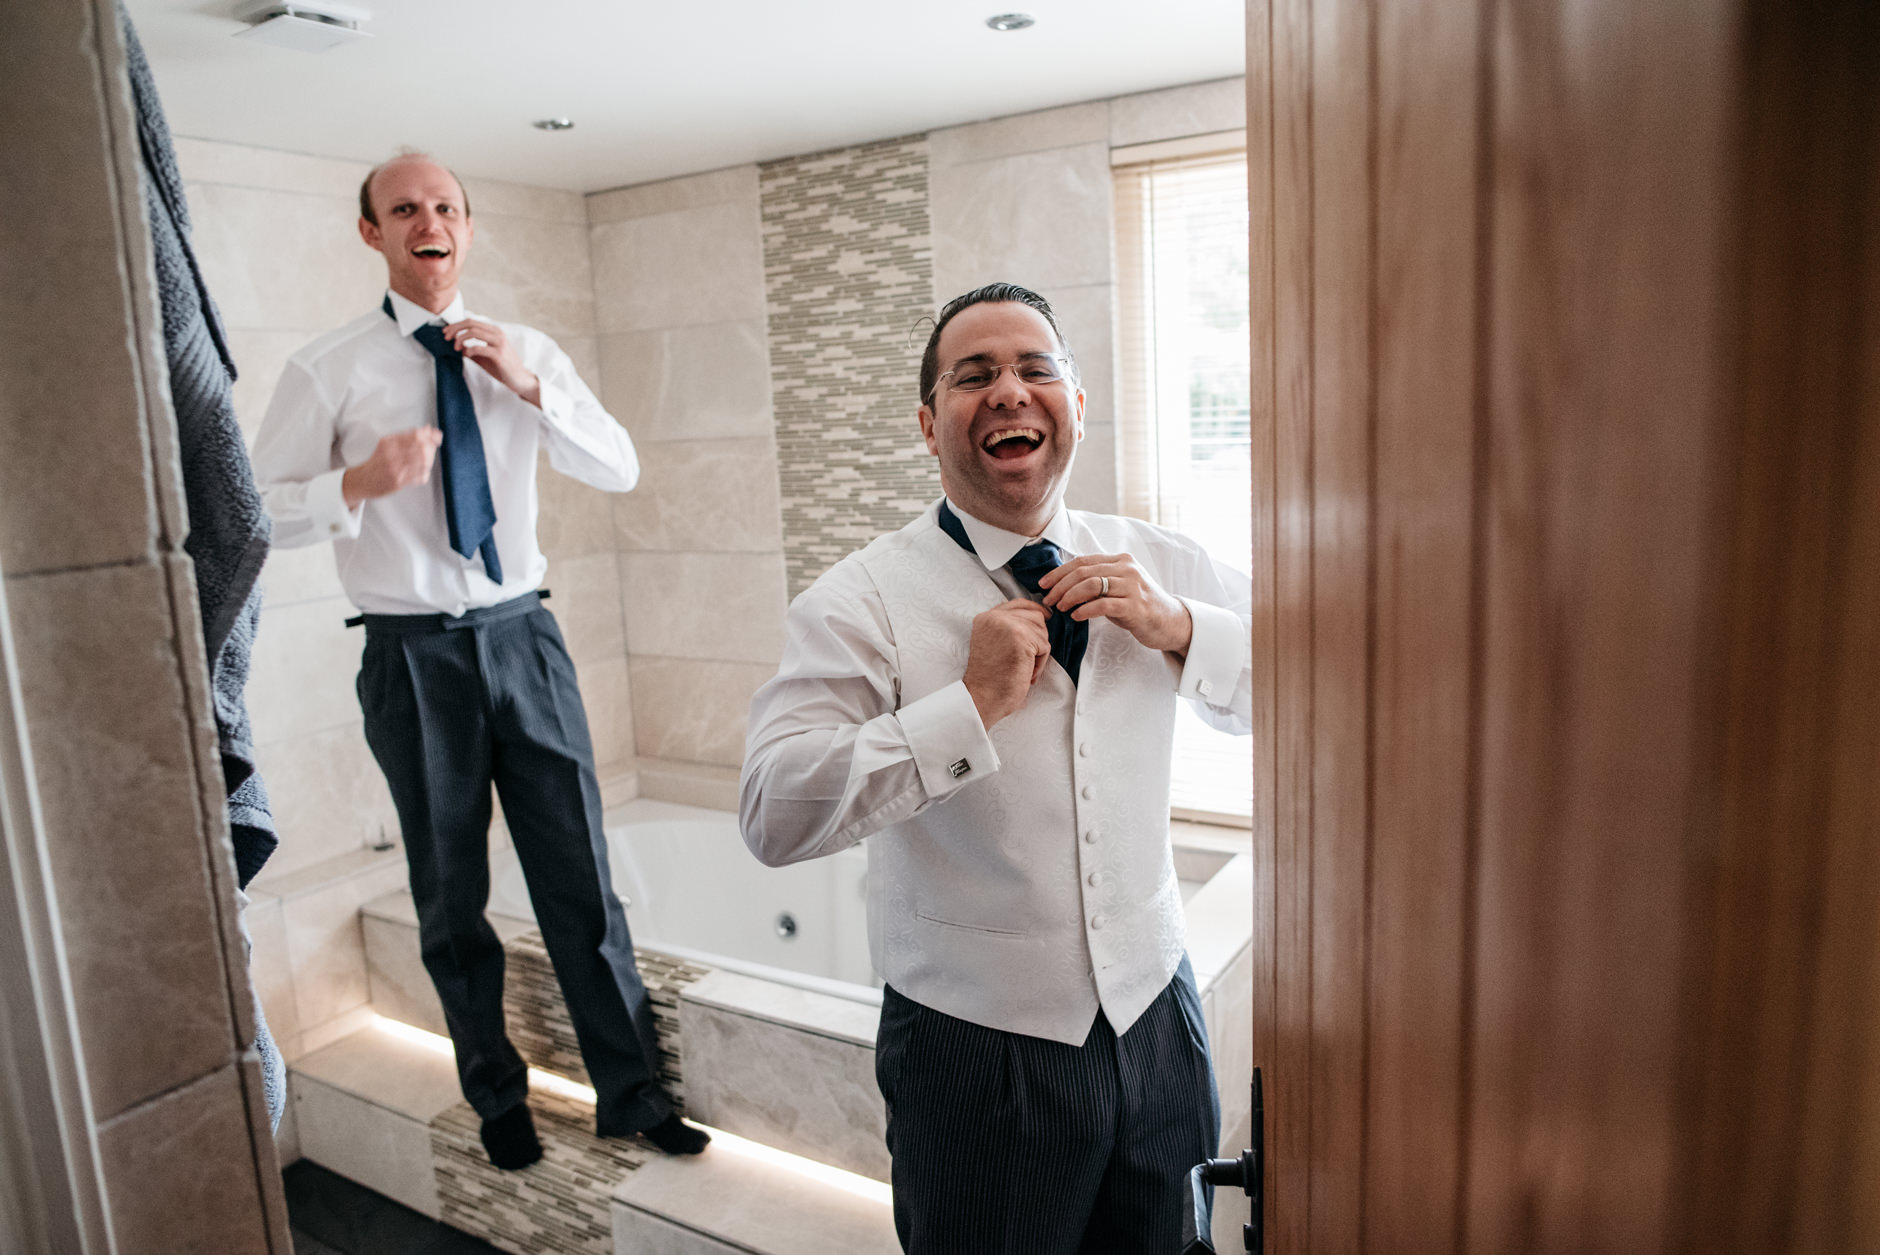 Pair of groomsmen laughing in the bathroom fixing their ties